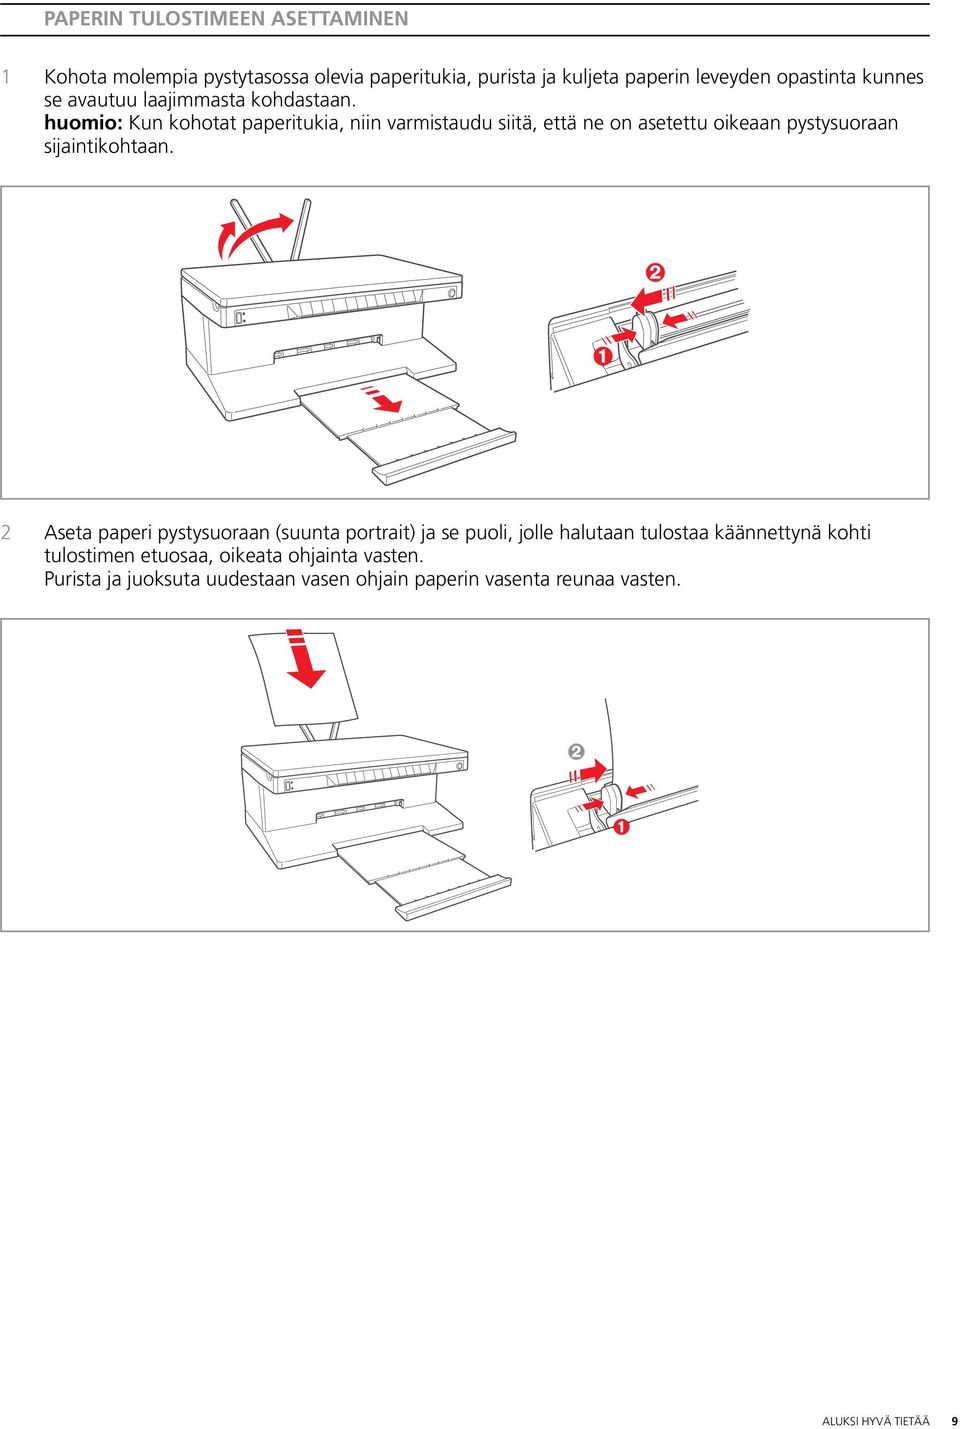 huomio: Kun kohotat paperitukia, niin varmistaudu siitä, että ne on asetettu oikeaan pystysuoraan sijaintikohtaan.